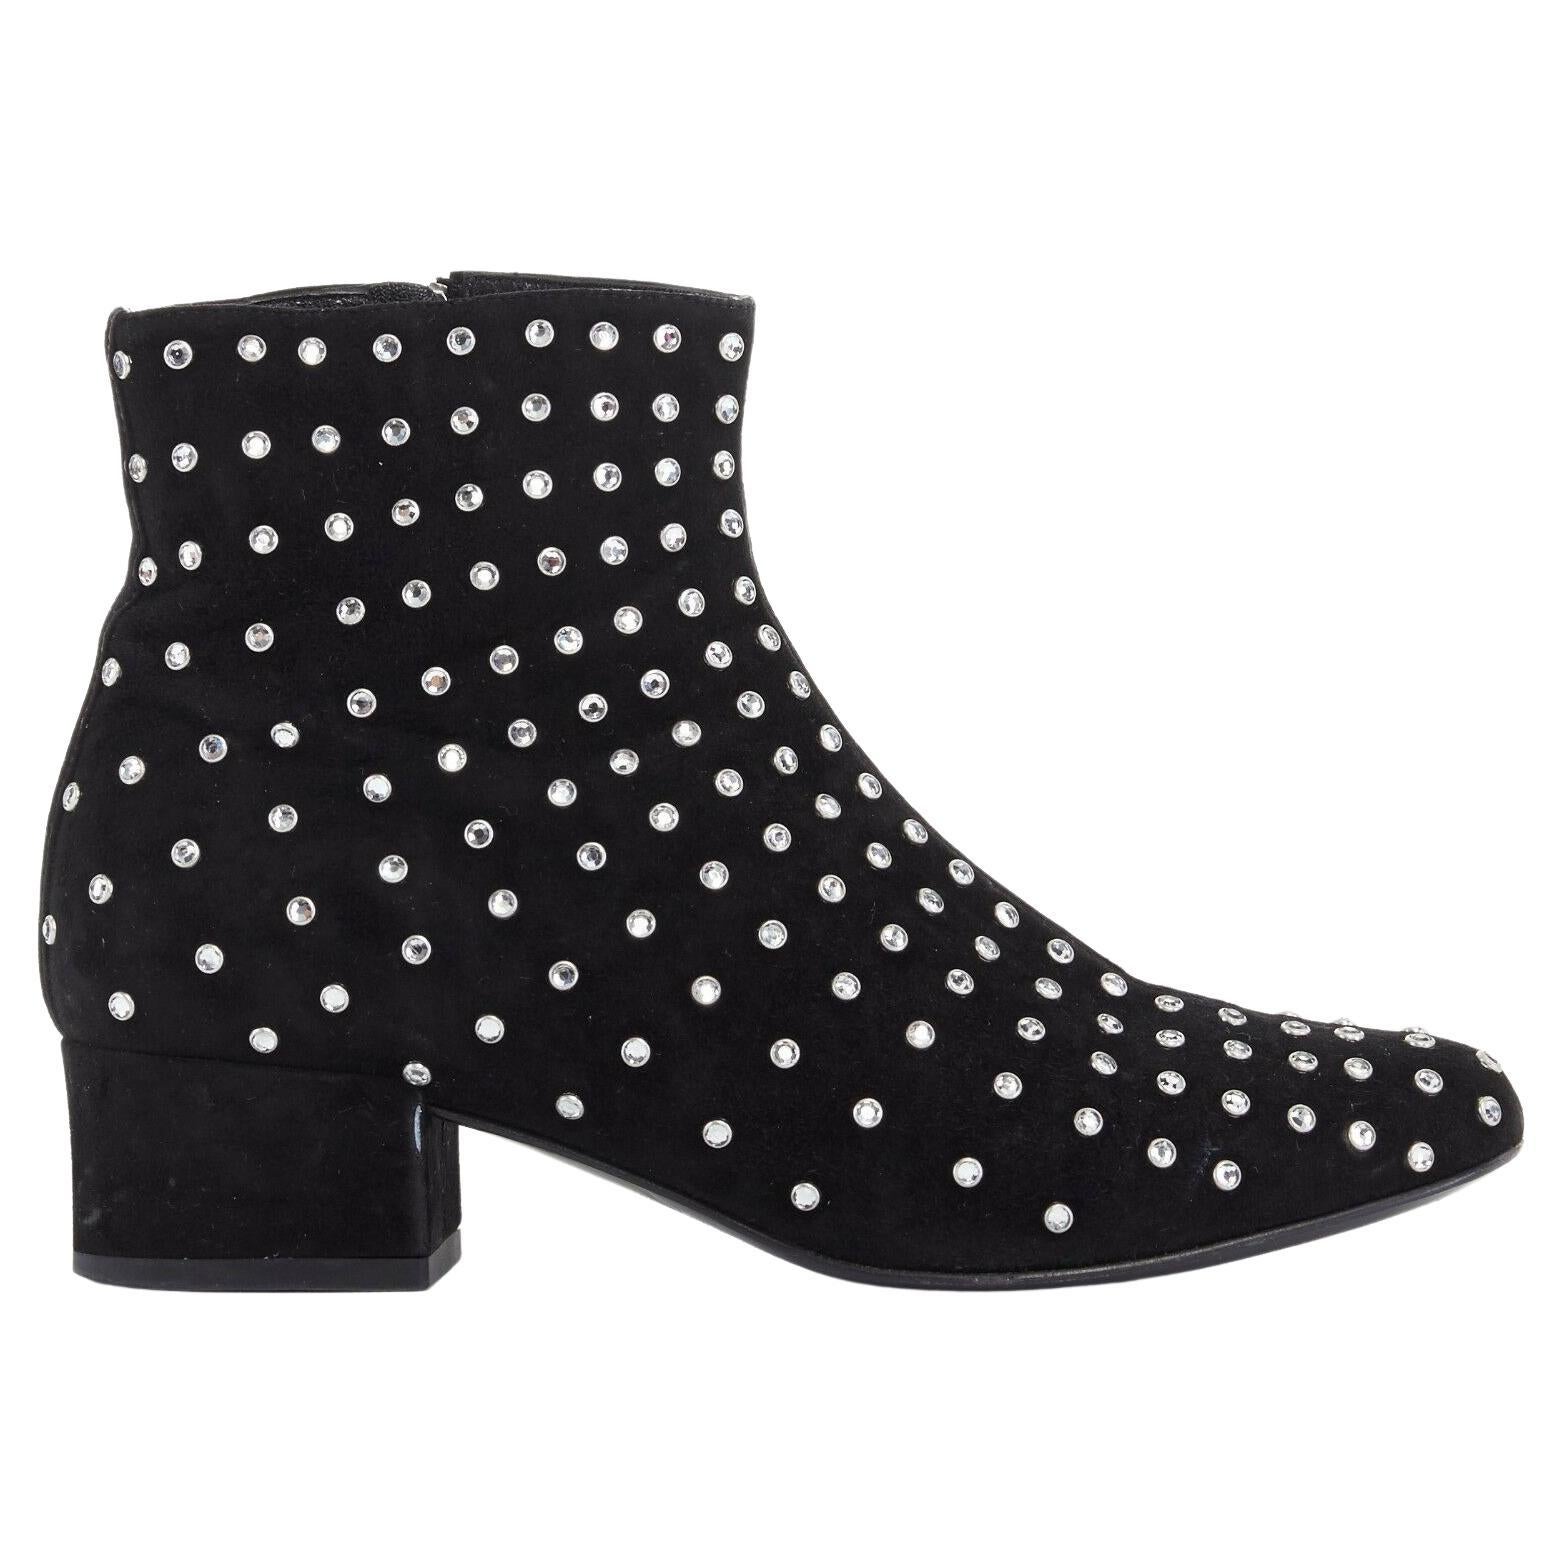 SAINT LAURENT PARIS black suede strass crystal embellished ankle boot shoe EU35 For Sale